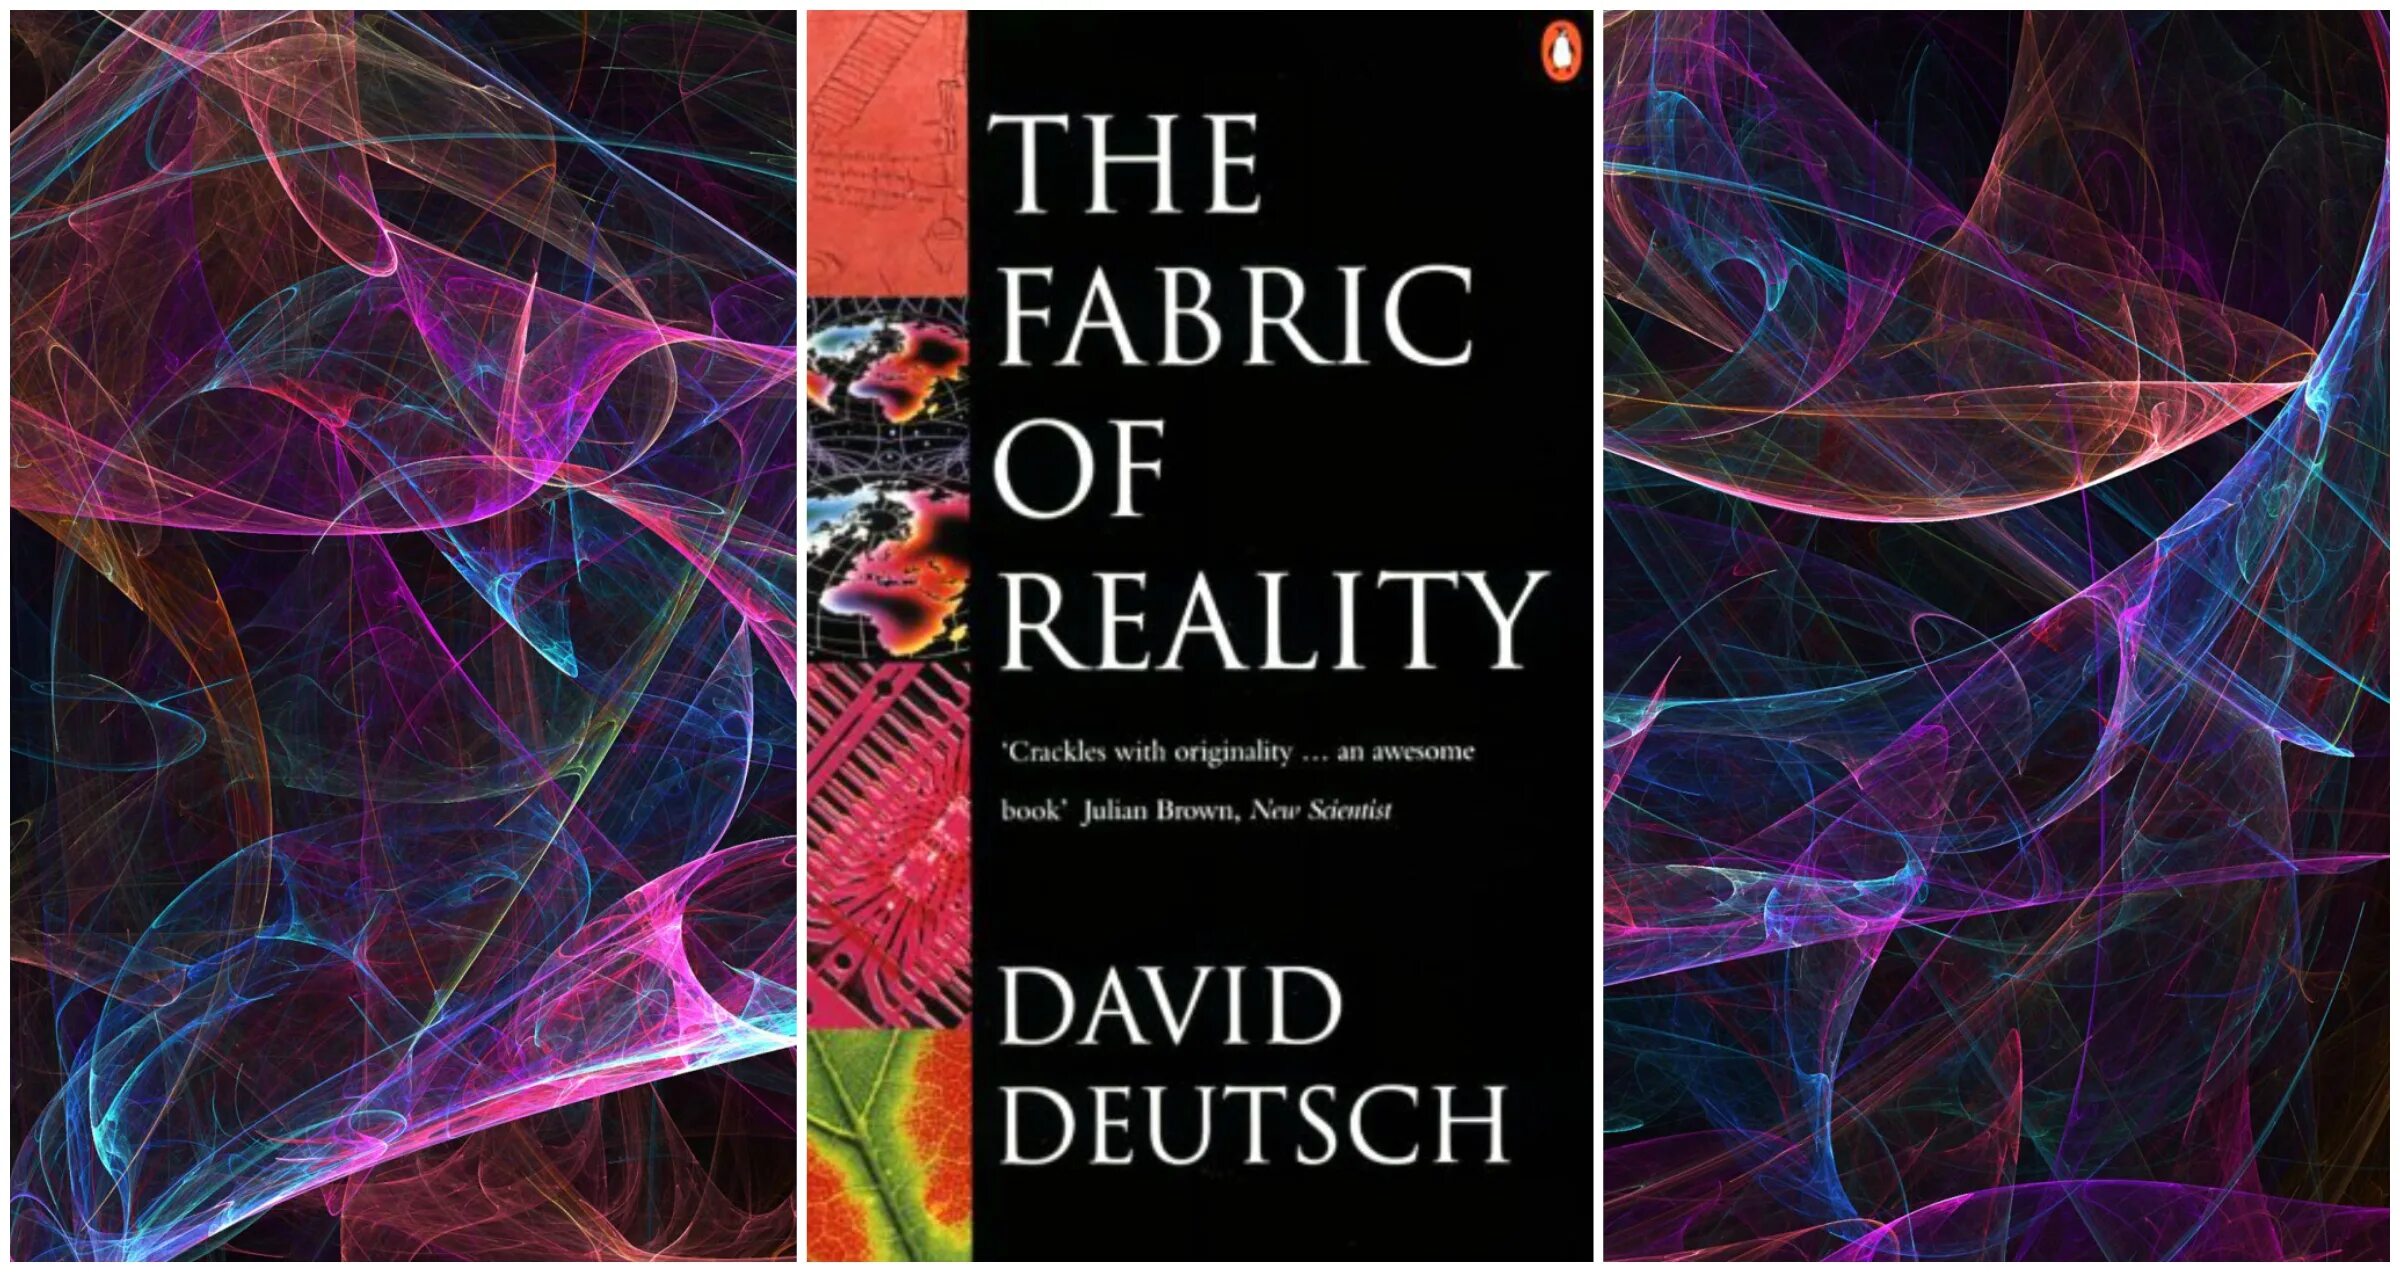 Дойч структура реальности. Дэвид Дойч. Дэвид Дойч структура реальности. David Deutsch the Fabric of reality. Дэвид Дойч структура реальности обложка.